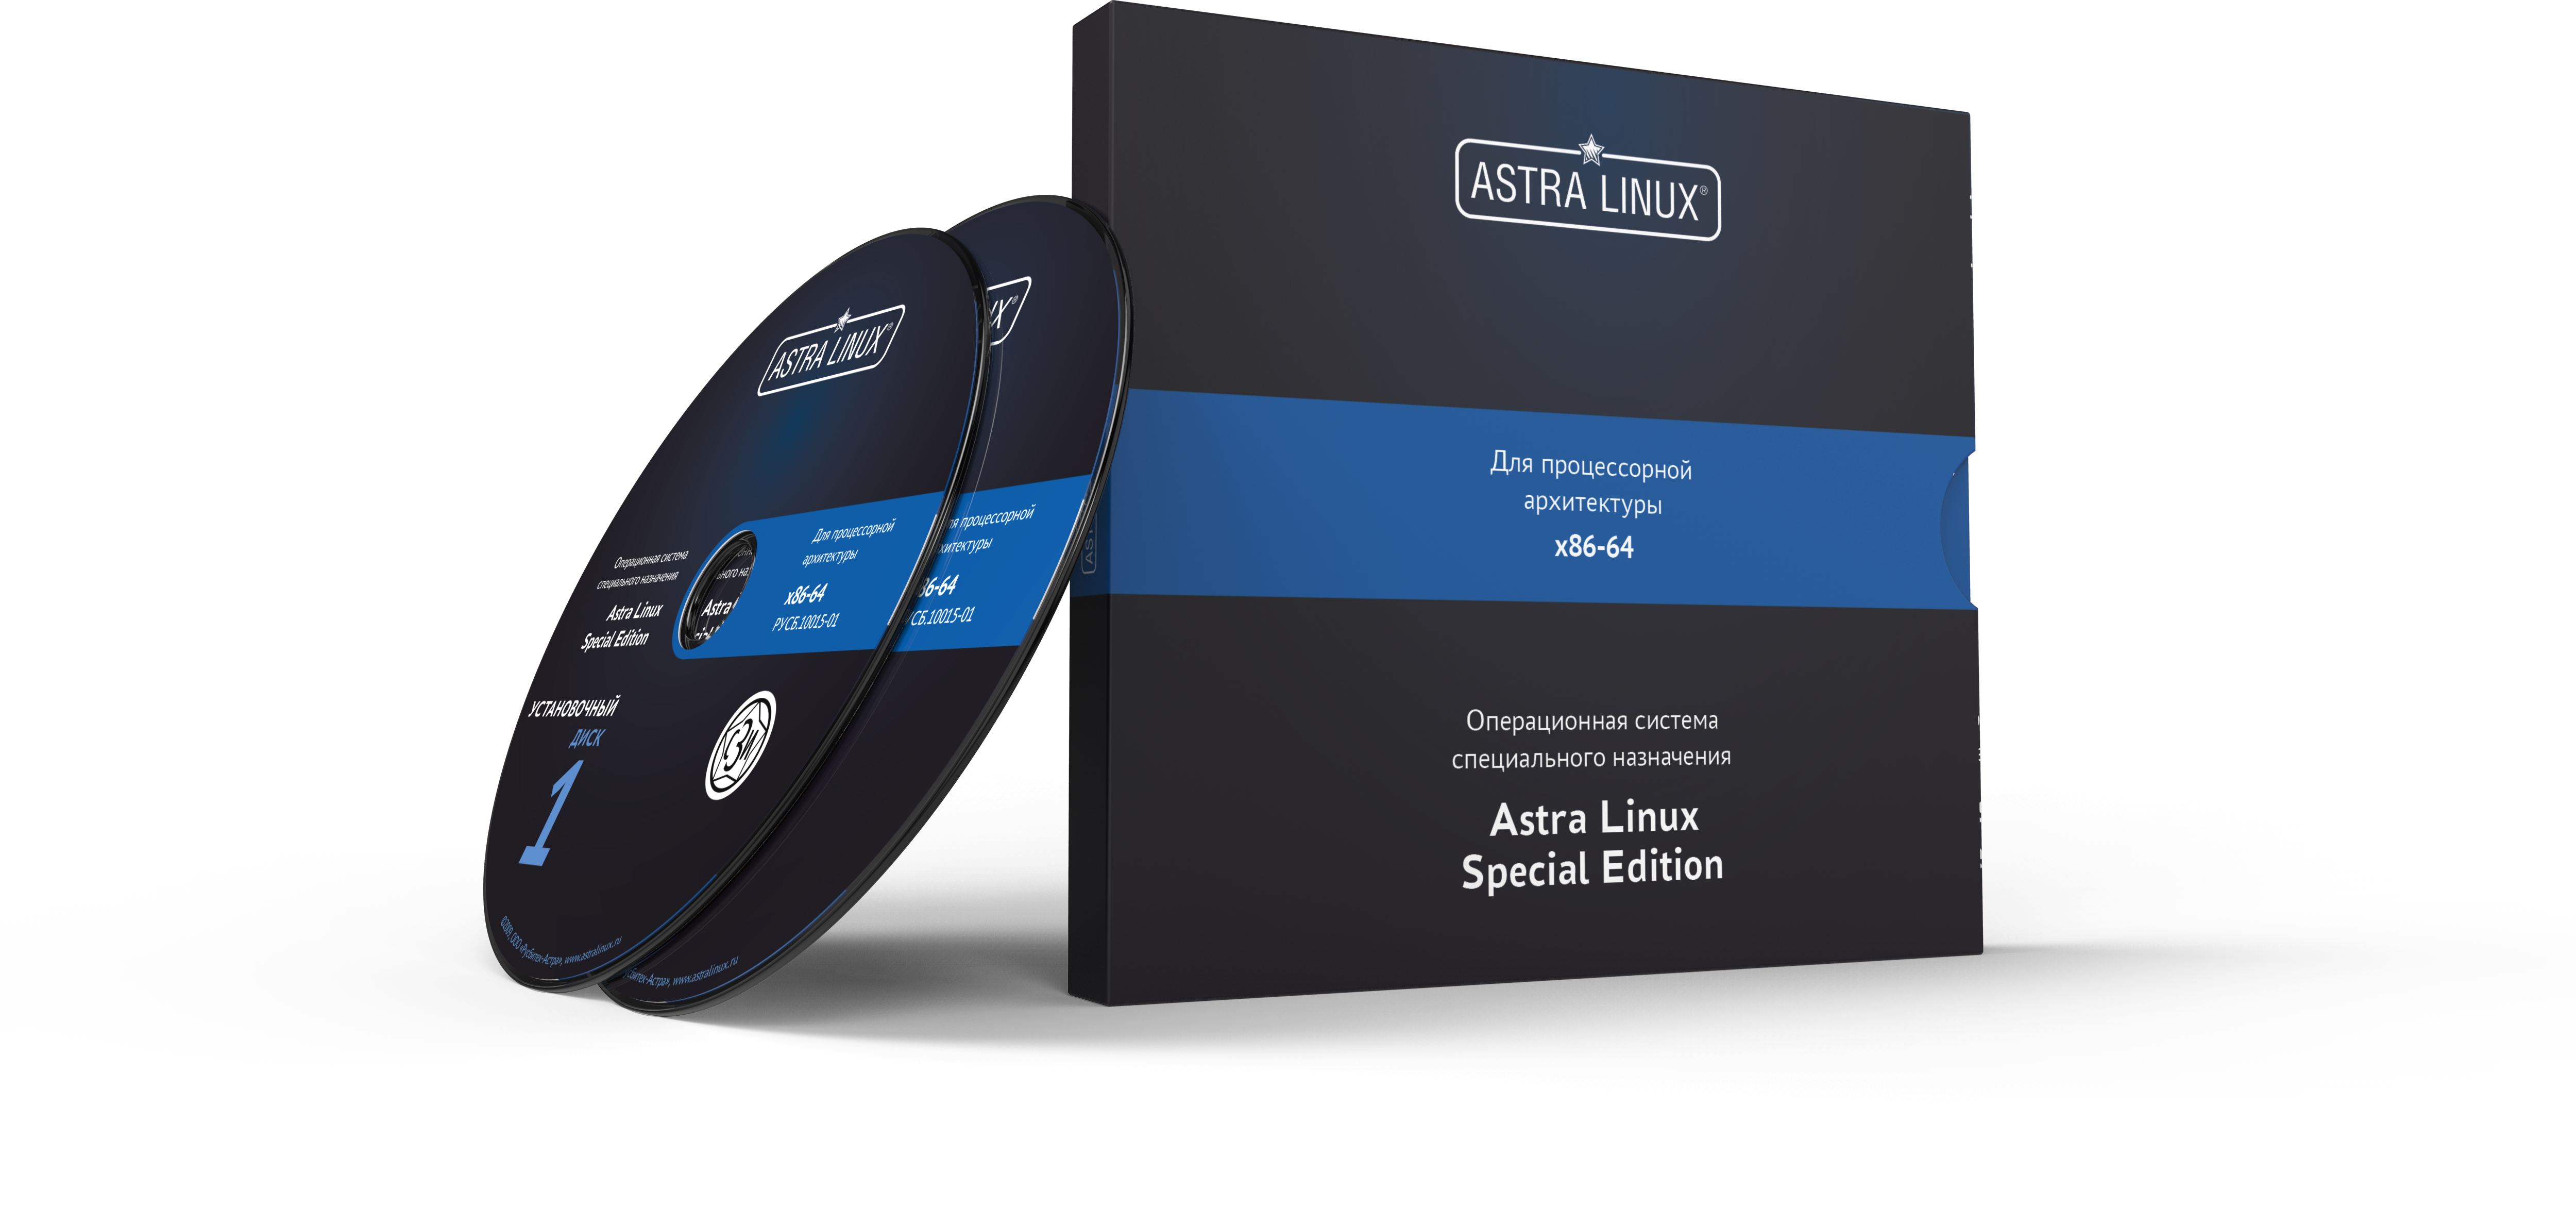 Astra Linux Special Edition 1.7 - Орел, электронный, без огр. срока, ТП "Привилегированная" на 12 мес.